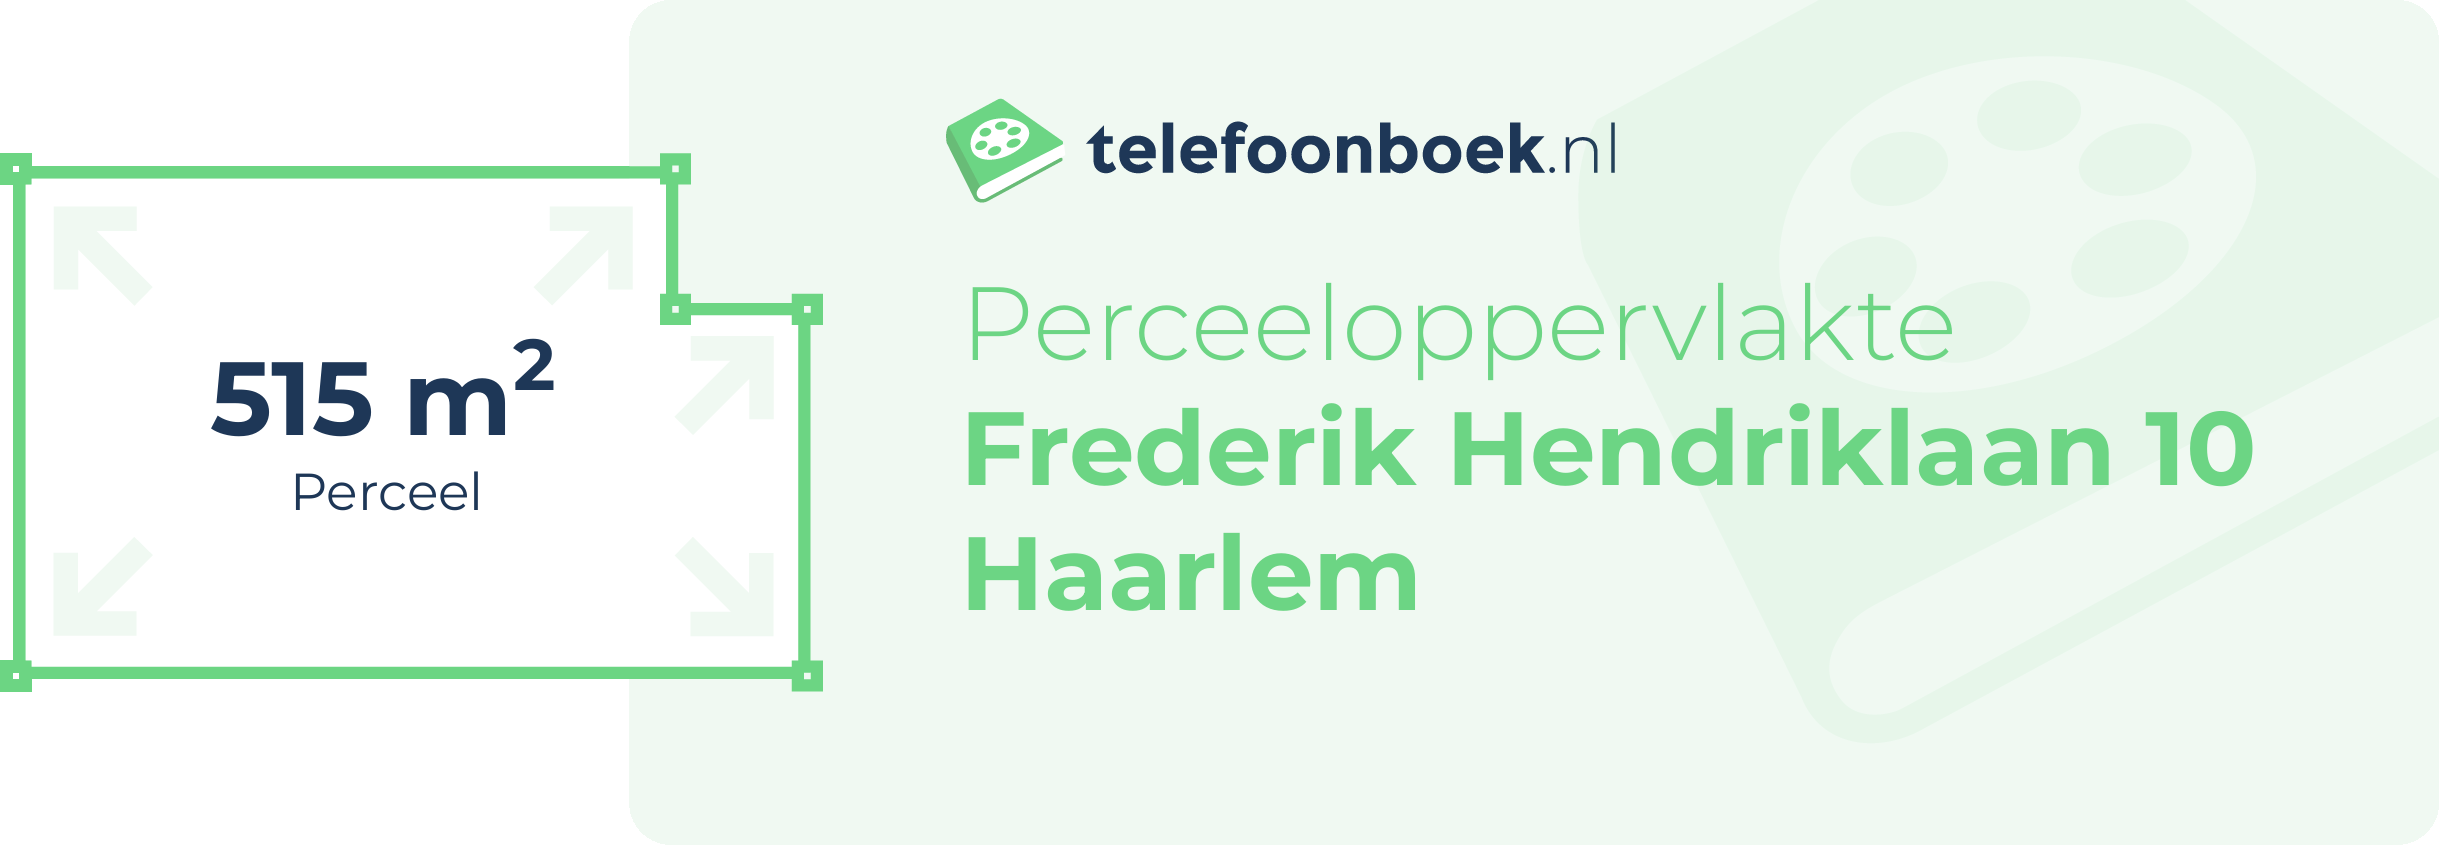 Perceeloppervlakte Frederik Hendriklaan 10 Haarlem